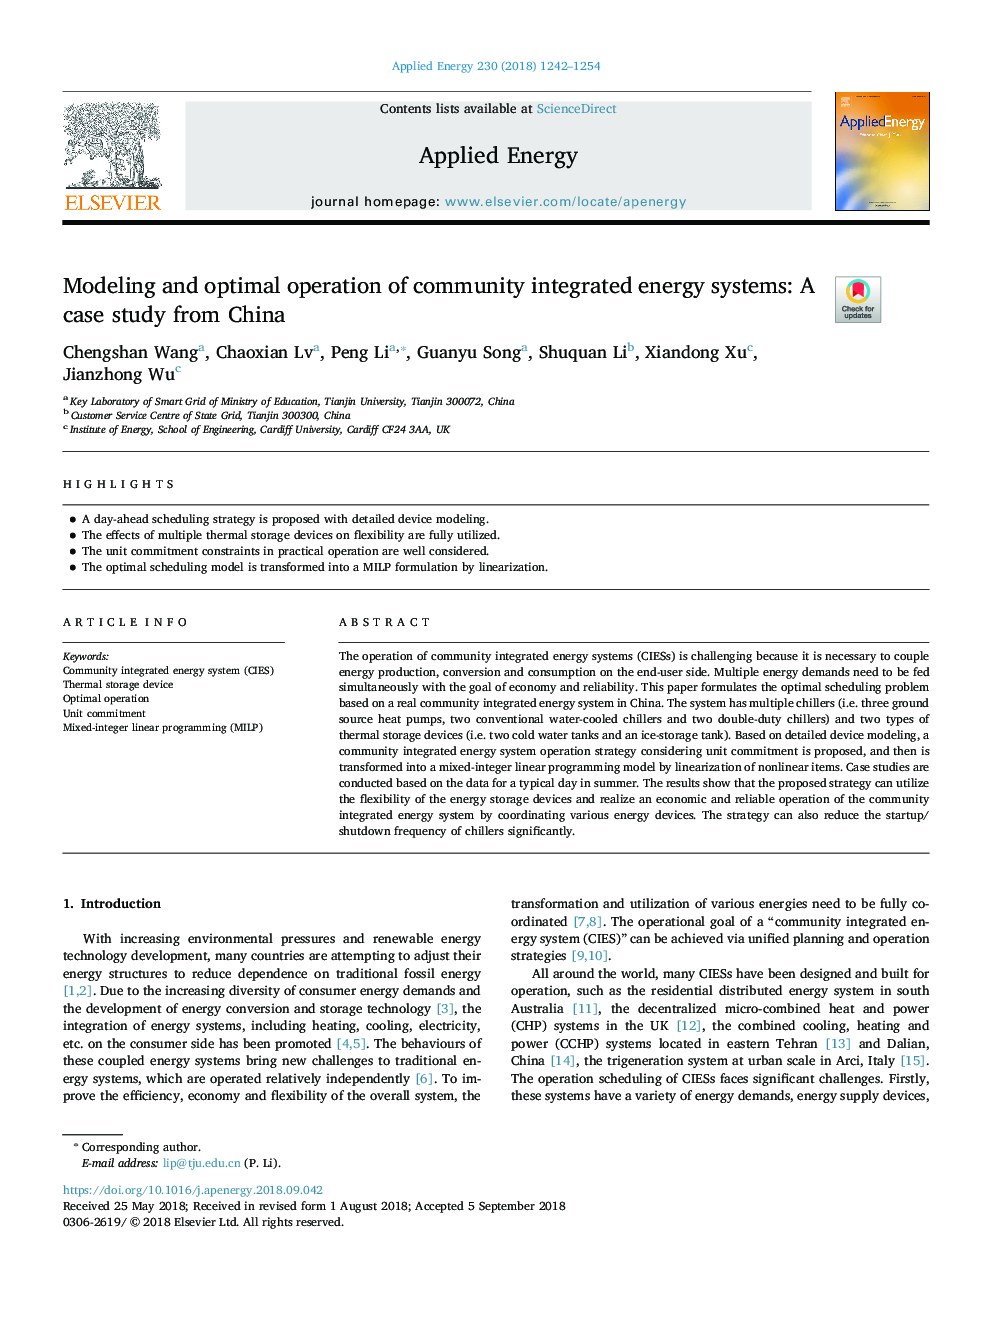 مدل سازی و بهینه سازی سیستم های انرژی مجتمع جامعه: مطالعه موردی از چین